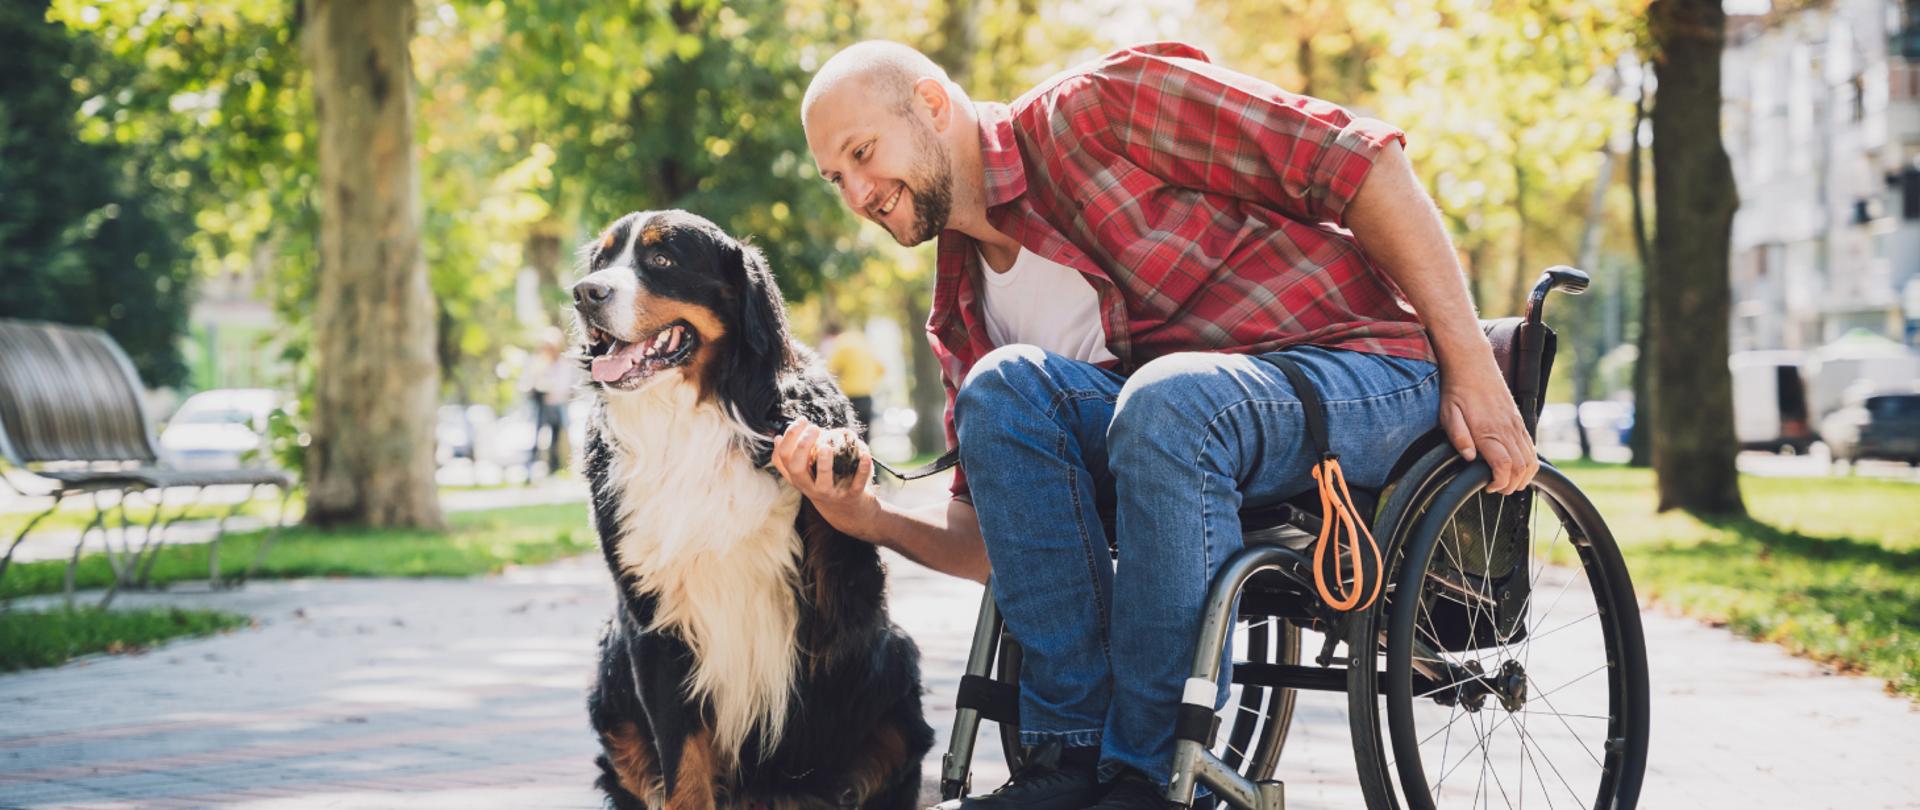 Mężczyzna na wózku inwalidzkim przebywa w parku wraz ze swoim psem. 